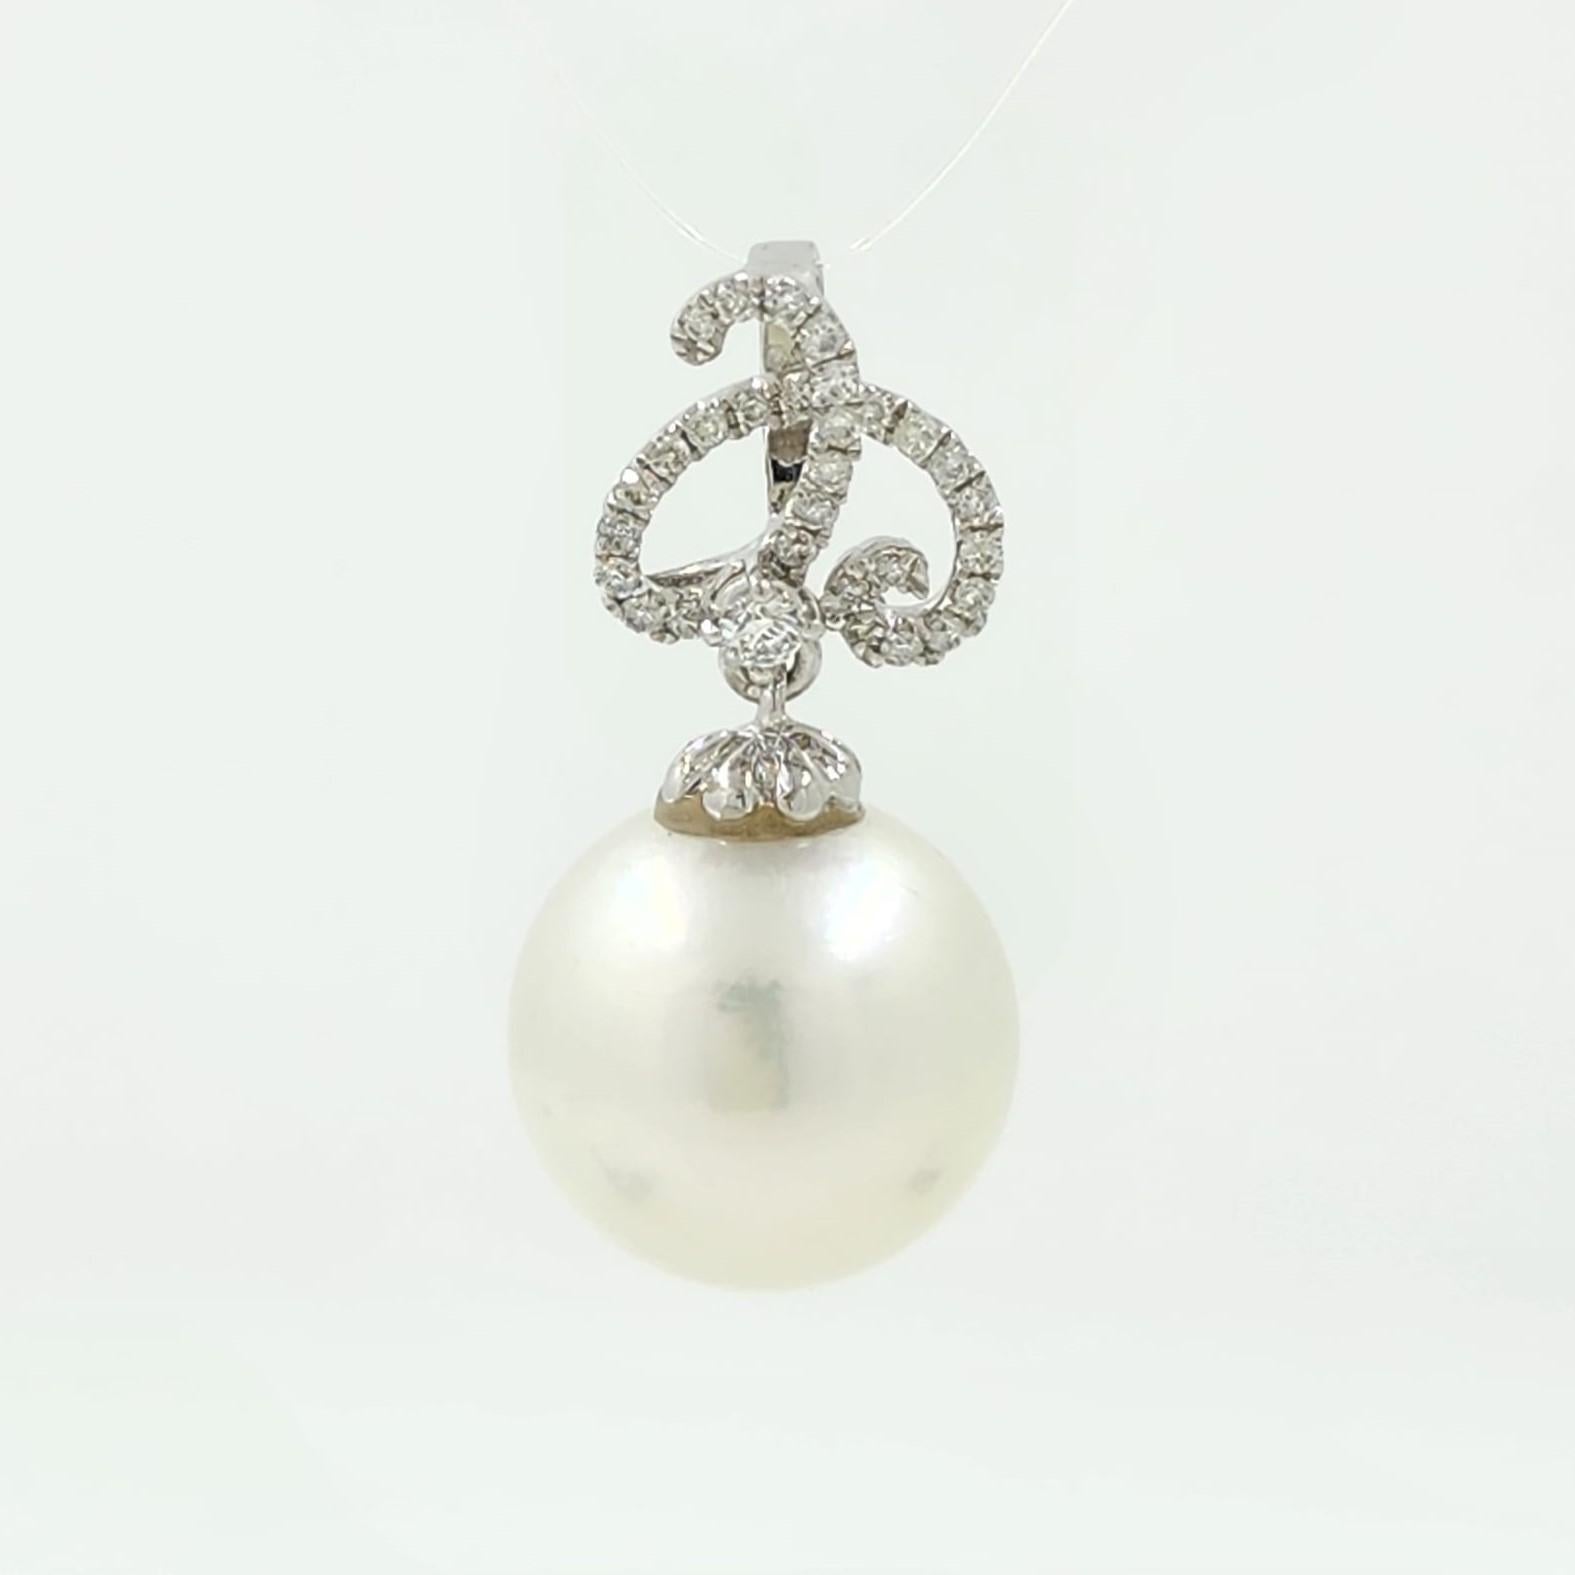 Le pendentif en or blanc 18 carats perles des mers du Sud et diamants est un superbe bijou qui respire la sophistication et le luxe. Sa pièce maîtresse est une magnifique perle des mers du Sud de 12,5 mm, connue pour son éclat lustré et son charme